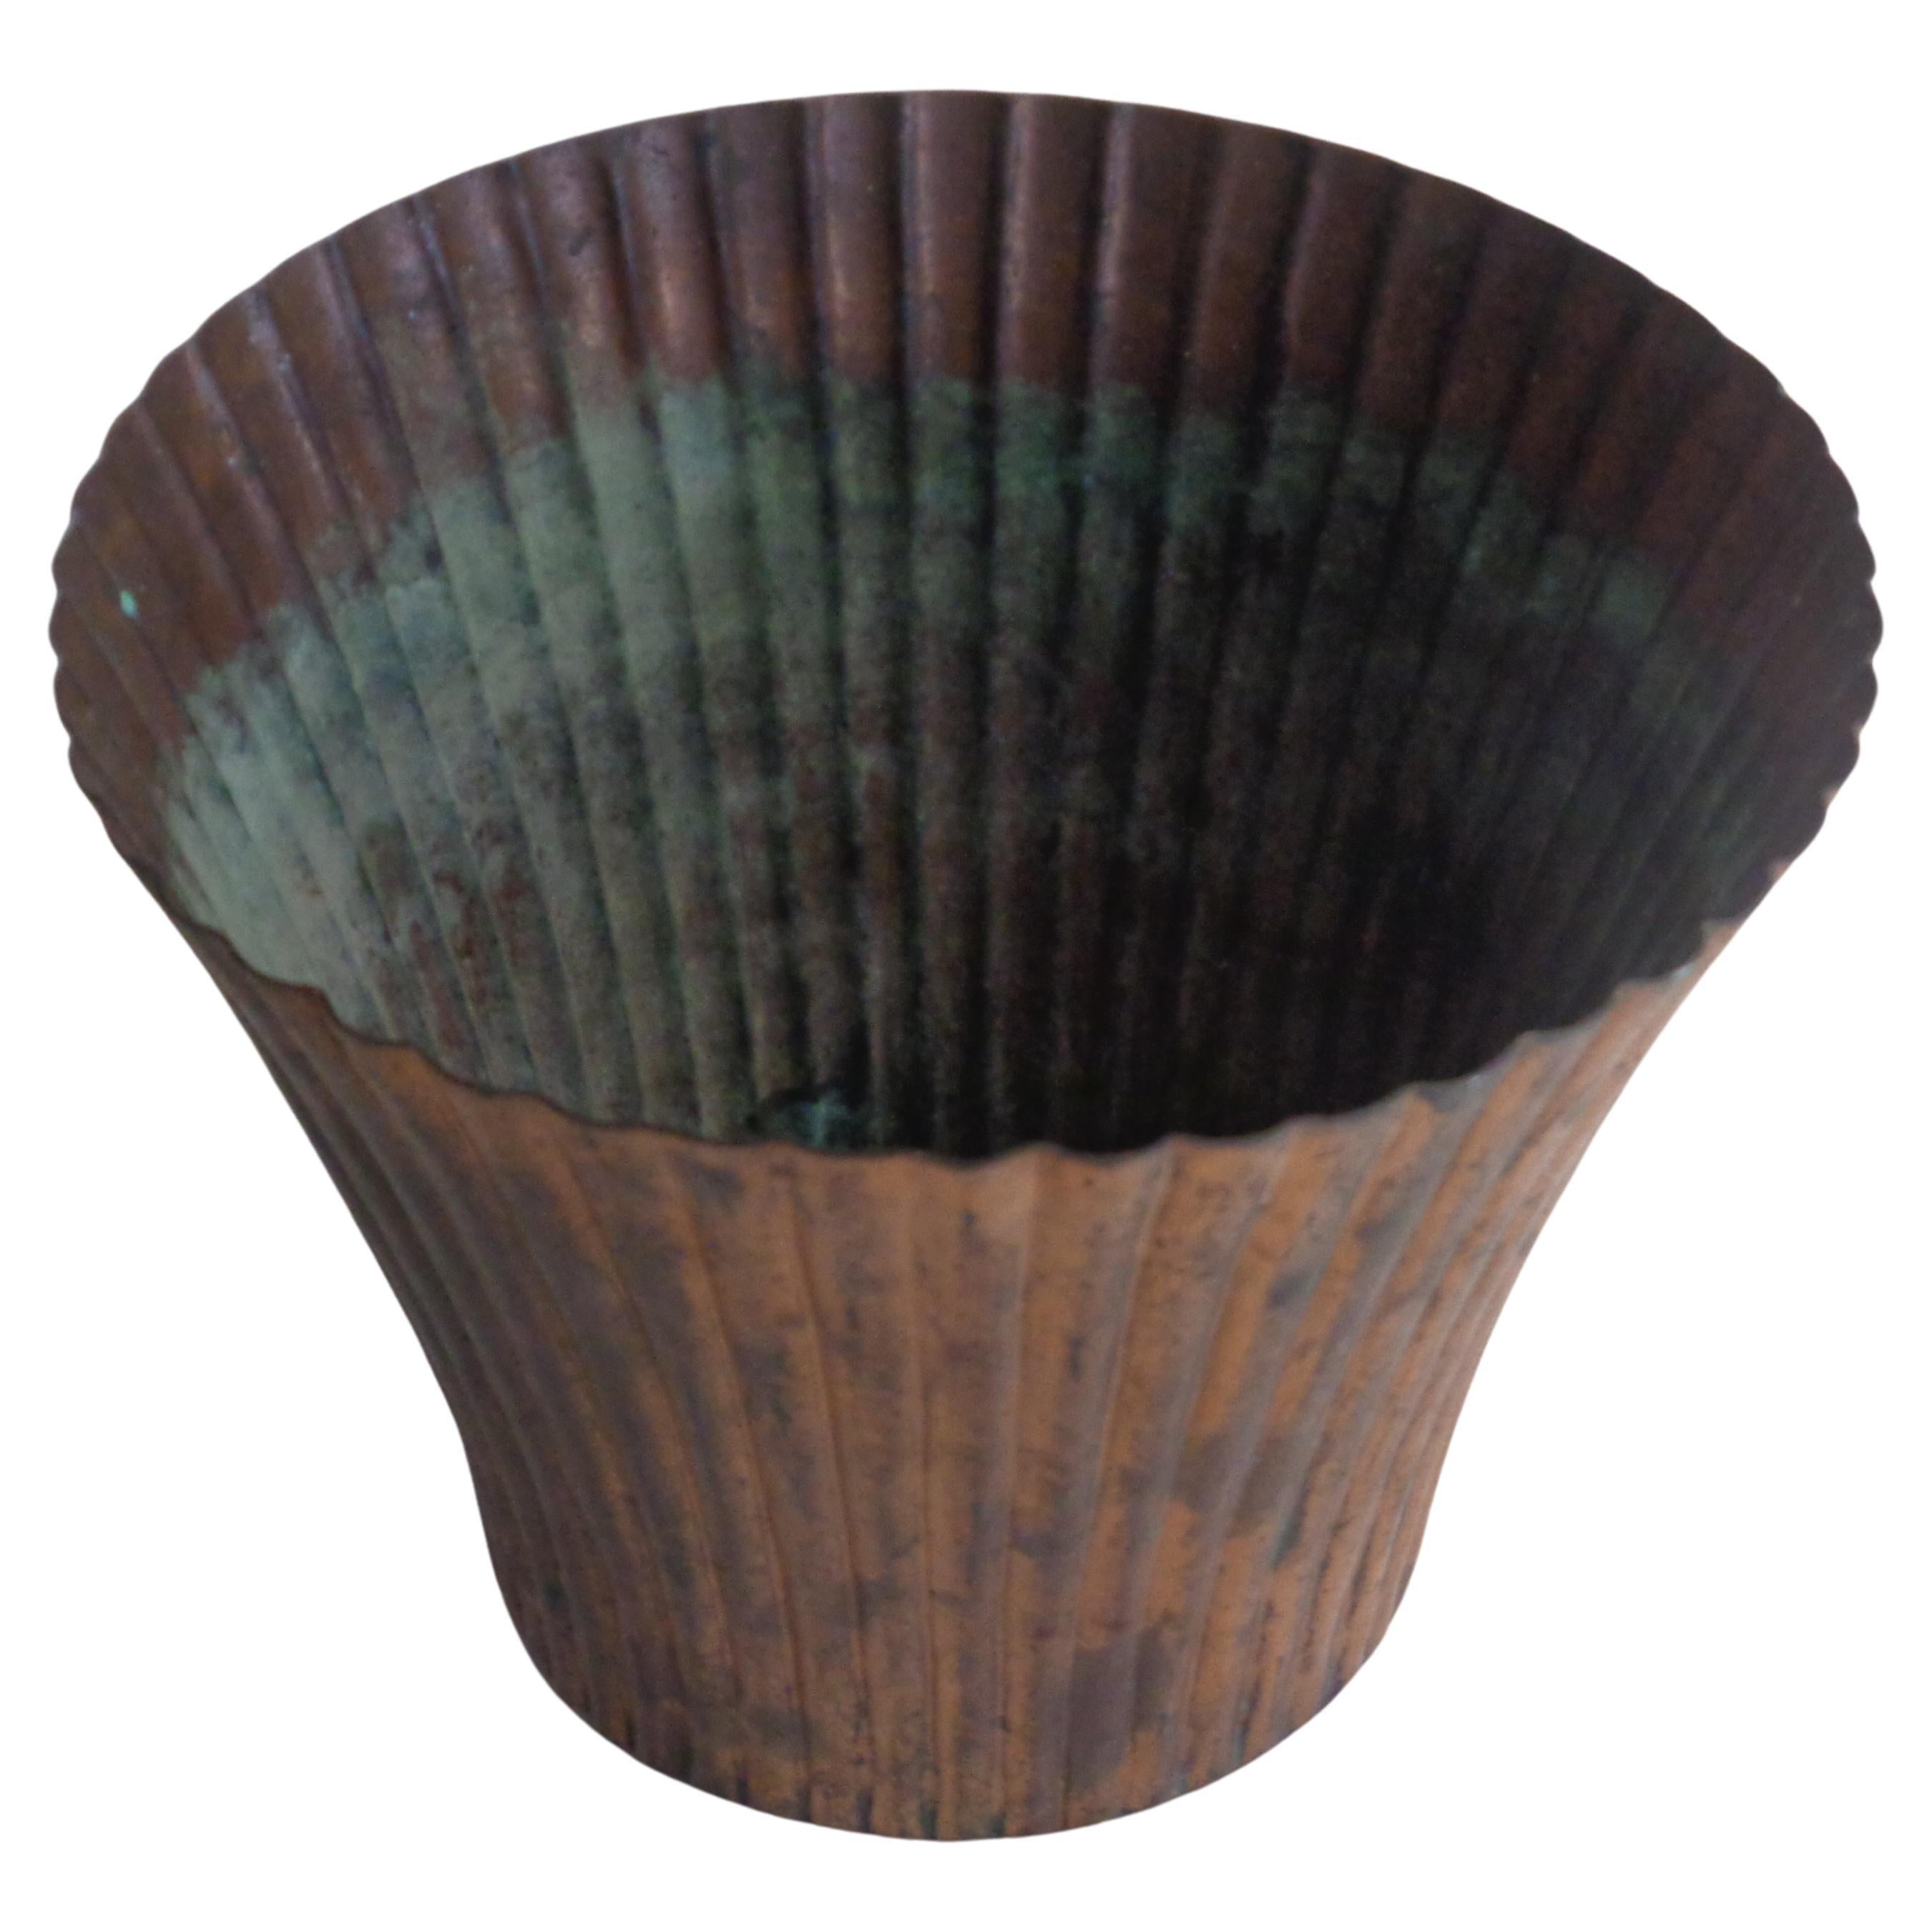 Amerikanische Art Deco Vase aus Kupfer mit ausgestelltem Rand in oxidierter Grünspanpatina. Chase Brass and Copper Company (signiert mit Logo auf der Unterseite) CIRCA 1930er Jahre. Maße: 5 1/2